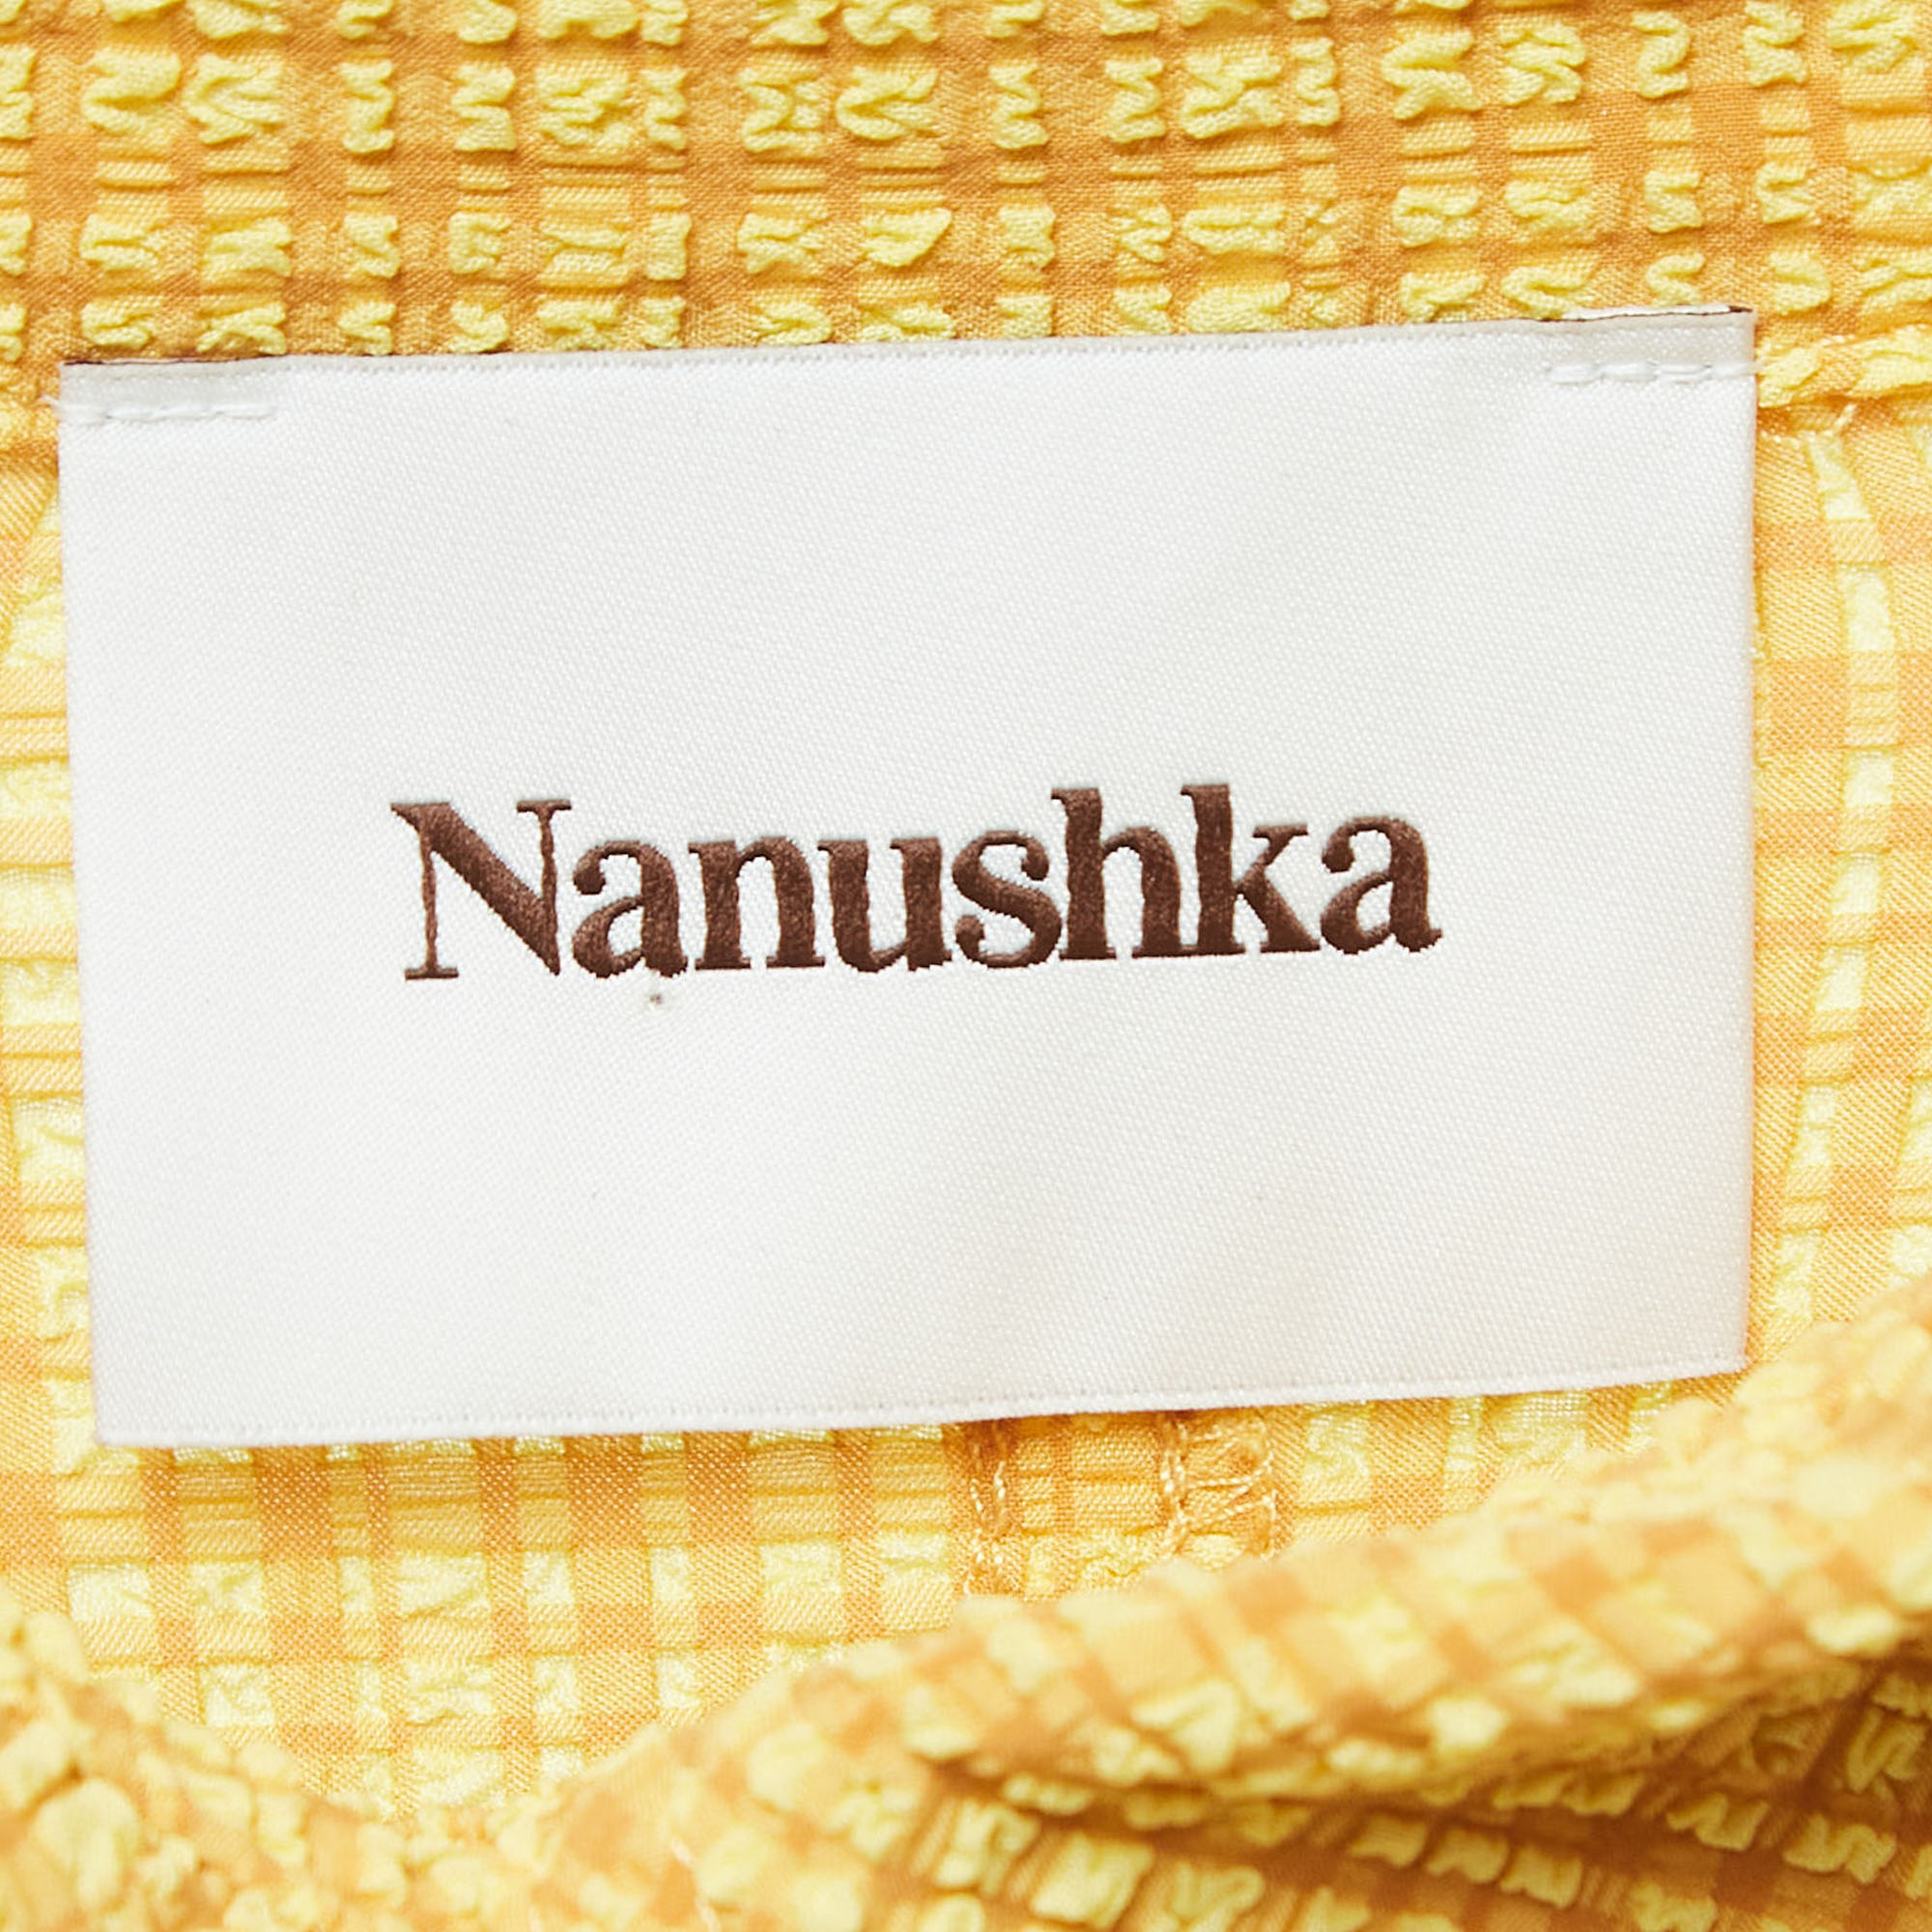 Nanushka Yellow Printed Crinkled Stretch Crepe Ruched Dress S